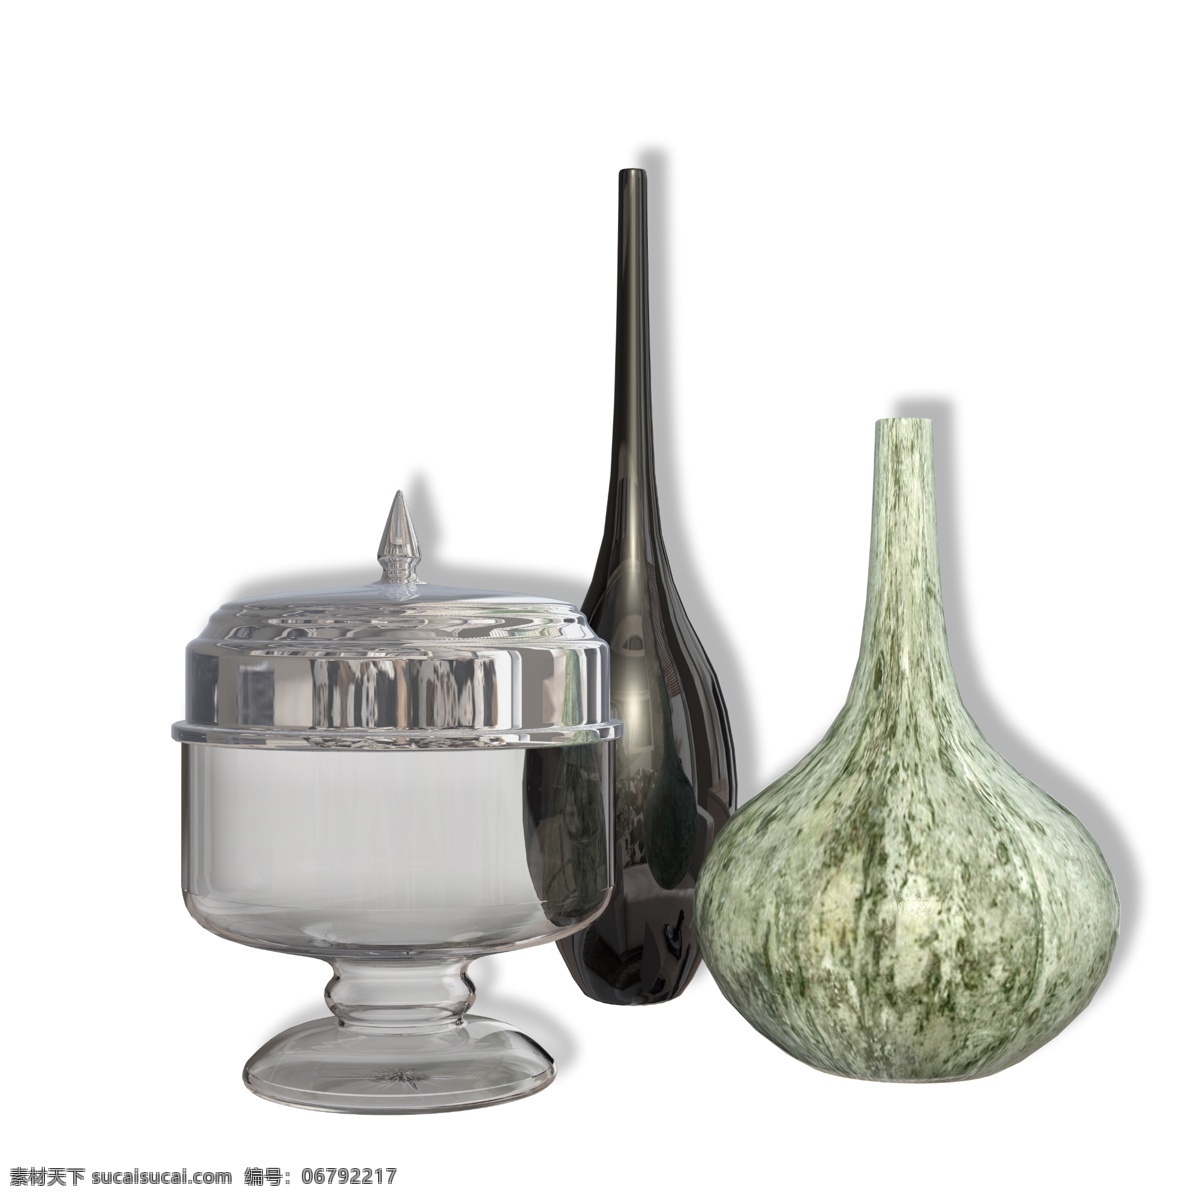 陶瓷 花瓶 玻璃 罐子 容器 瓷器